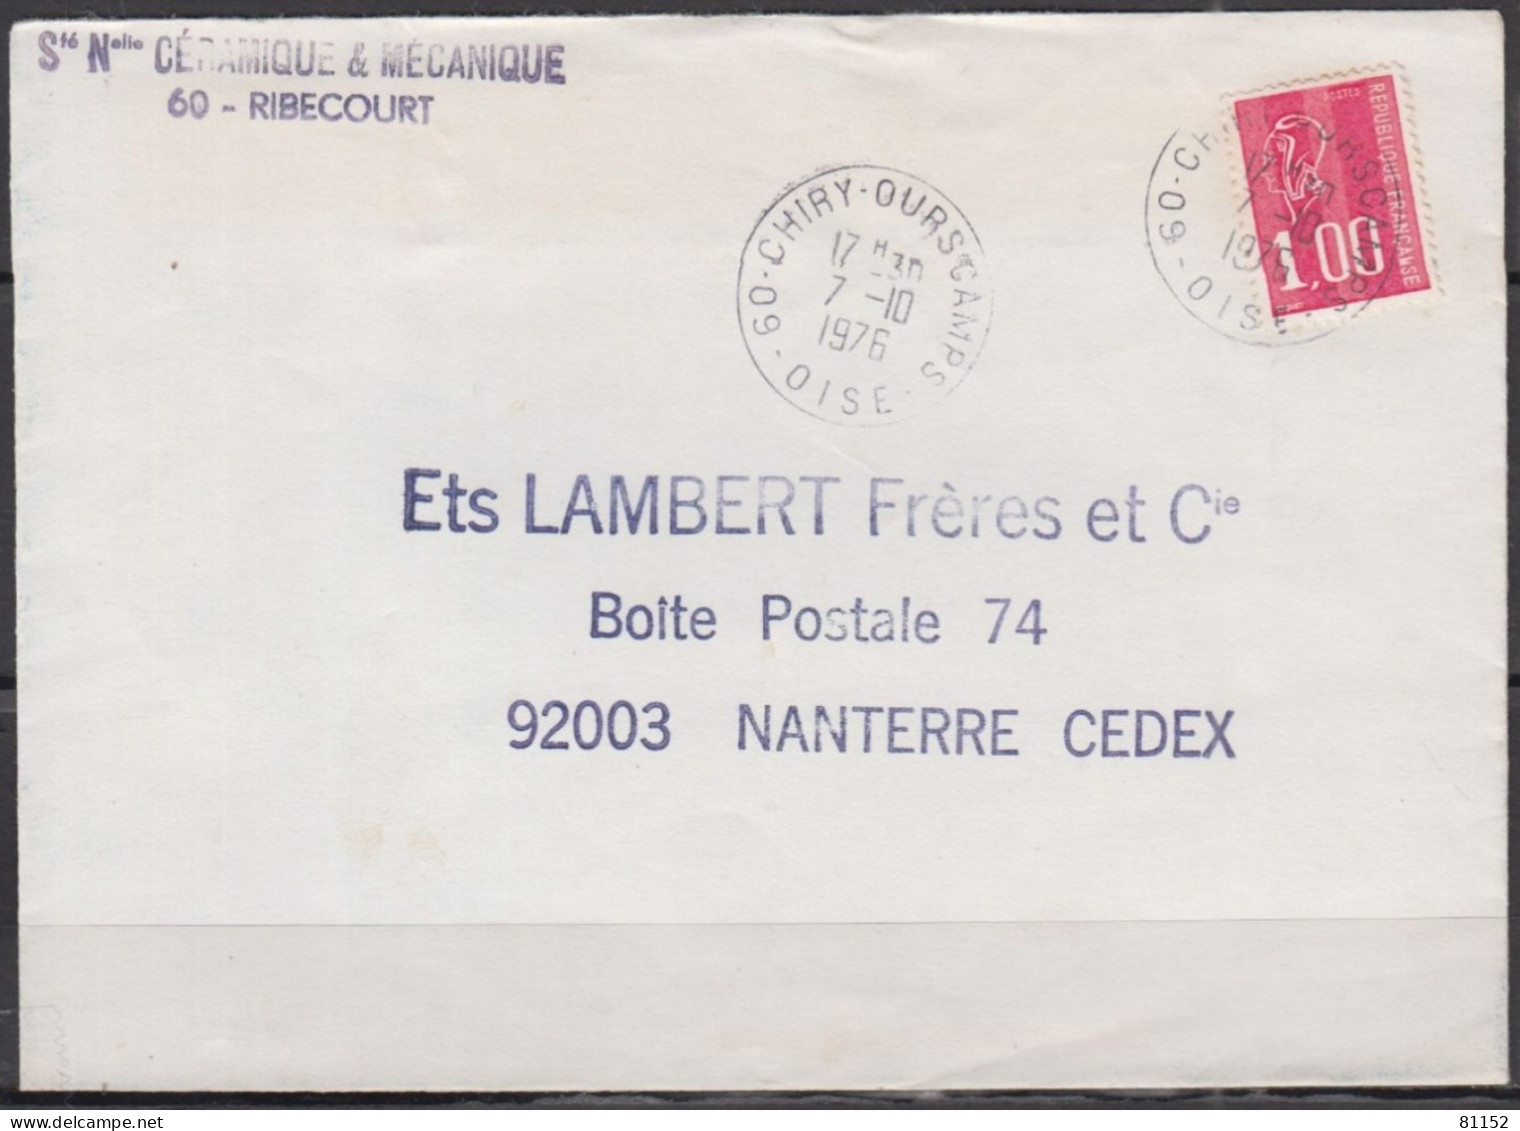 2 Lettres  Pub De 60 RIBECOURT 1976 Et 1977 Pour 92 NANTERRE Avec Mne De BEQUET 1.00F Postées à 60 CHIRY-OURSCAMPS - 1971-1976 Marianne Van Béquet